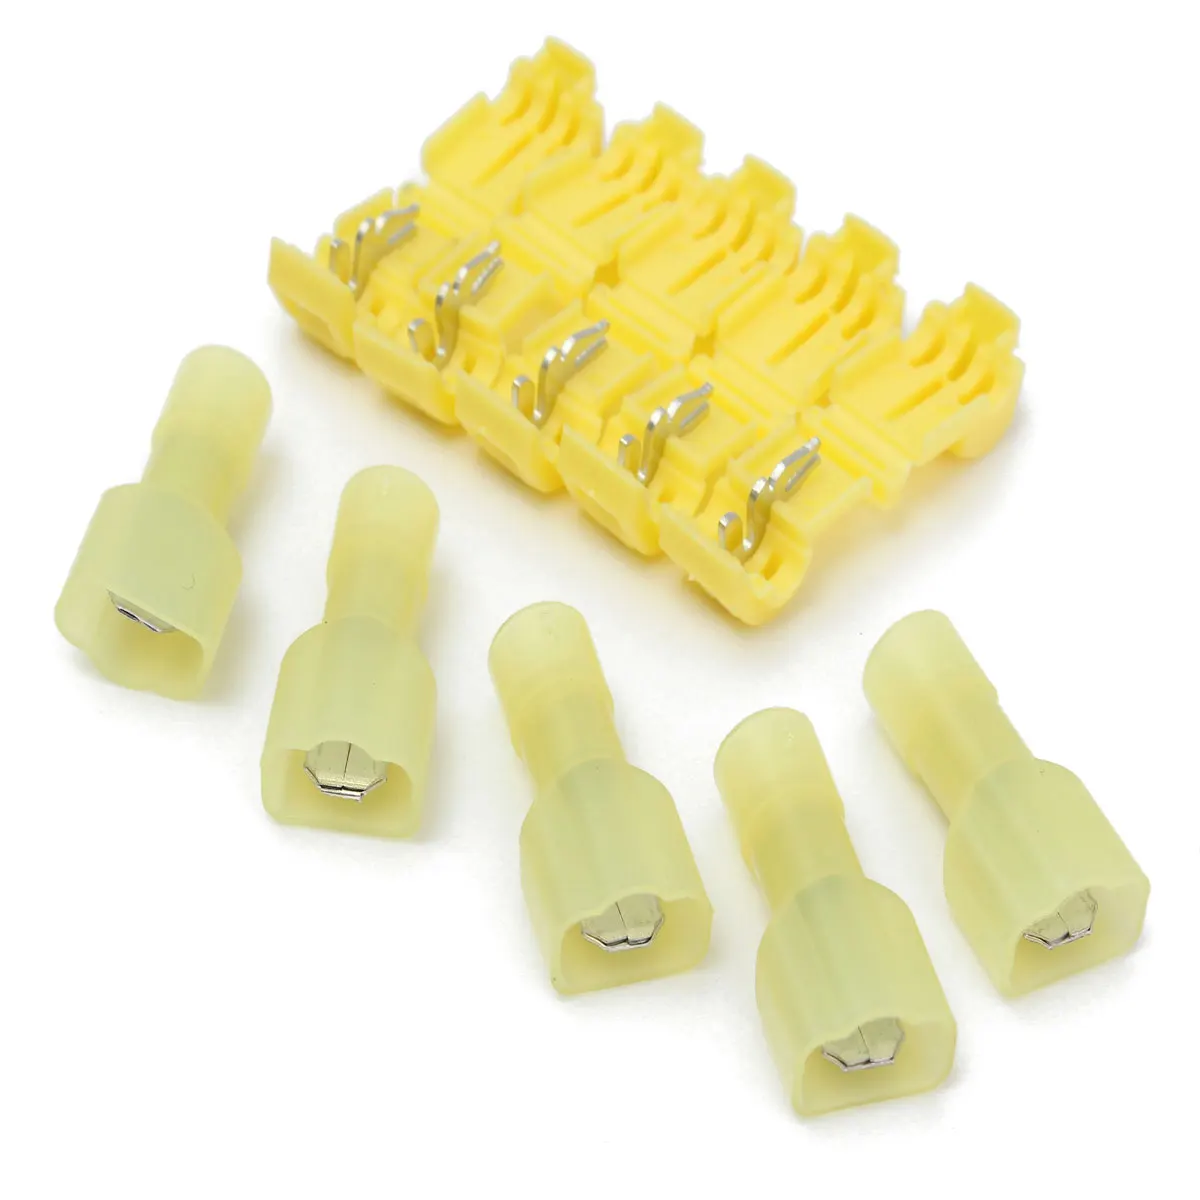 100/10pcs Electrical Wire Crimp Terminals Quick Splice Cable Spade Connectors Kit Set 0.3-1.0mm2/1.0-2.5mm2/4.0-6.0mm2